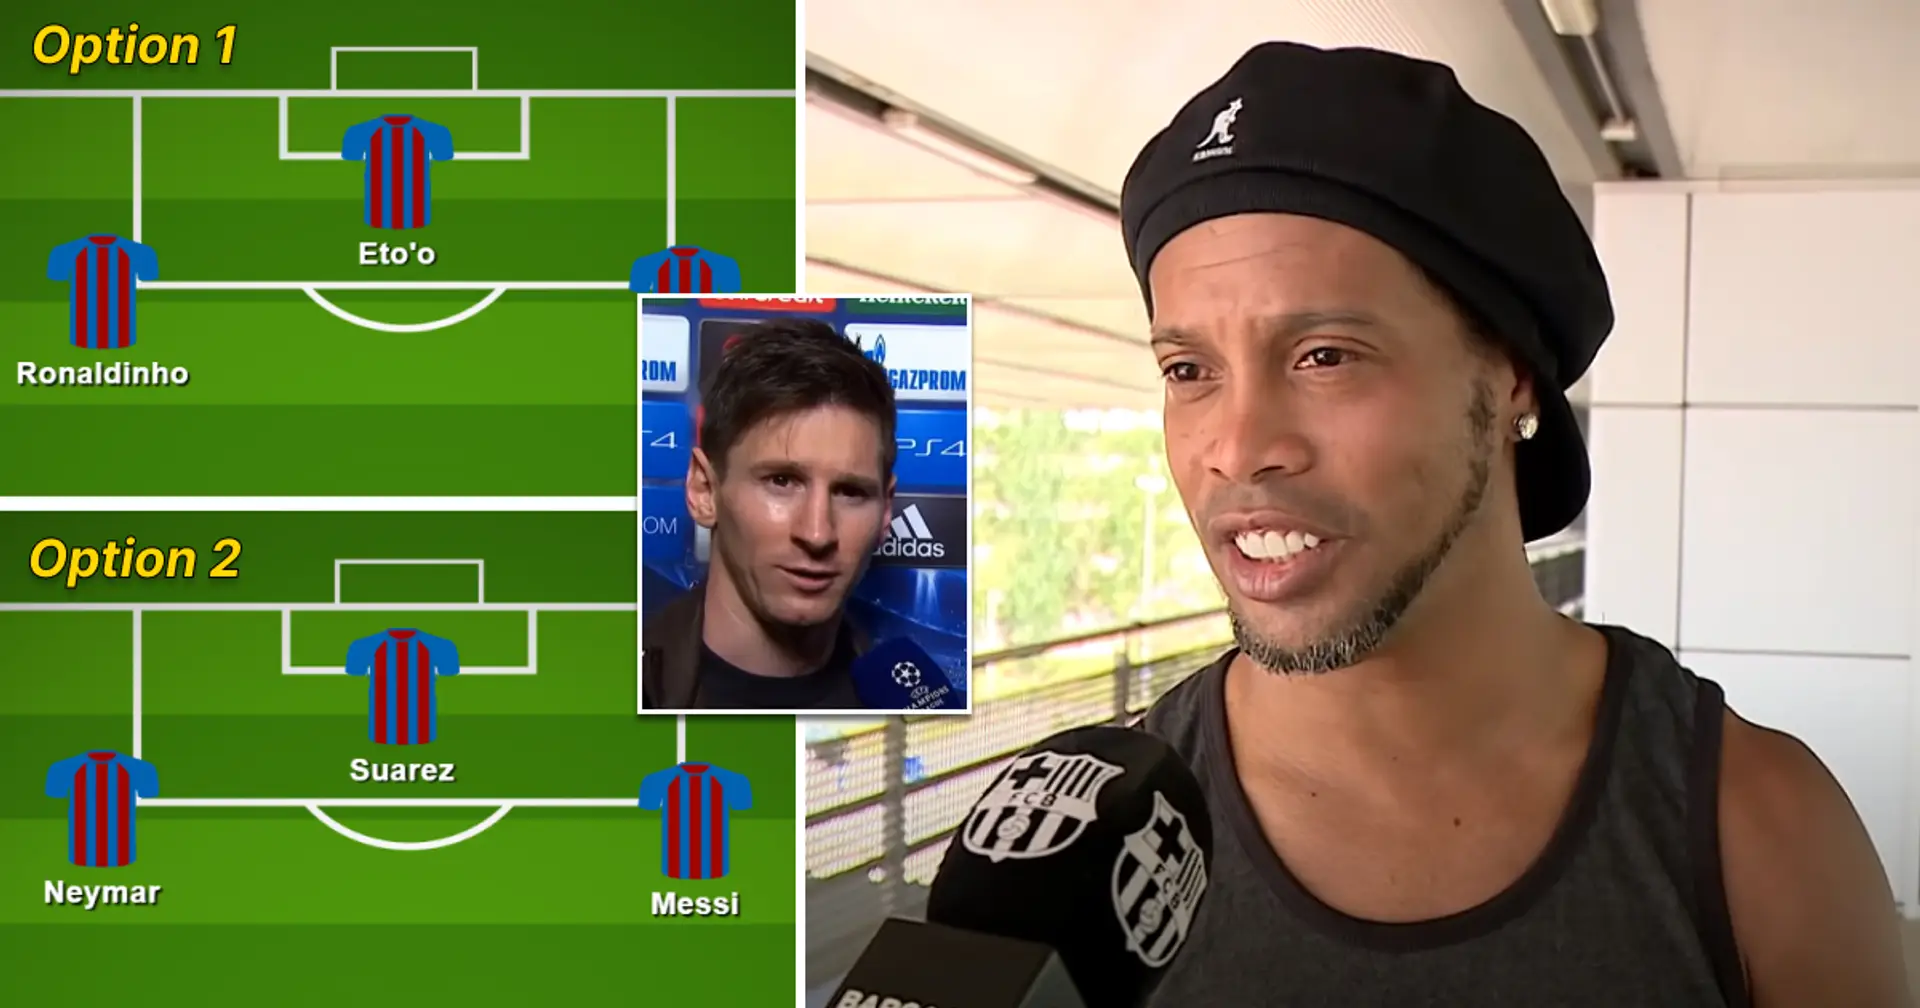 Recordando a quién nombró Ronaldinho la mejor delantera del Barça entre MSN y él mismo-Eto'o-Messi